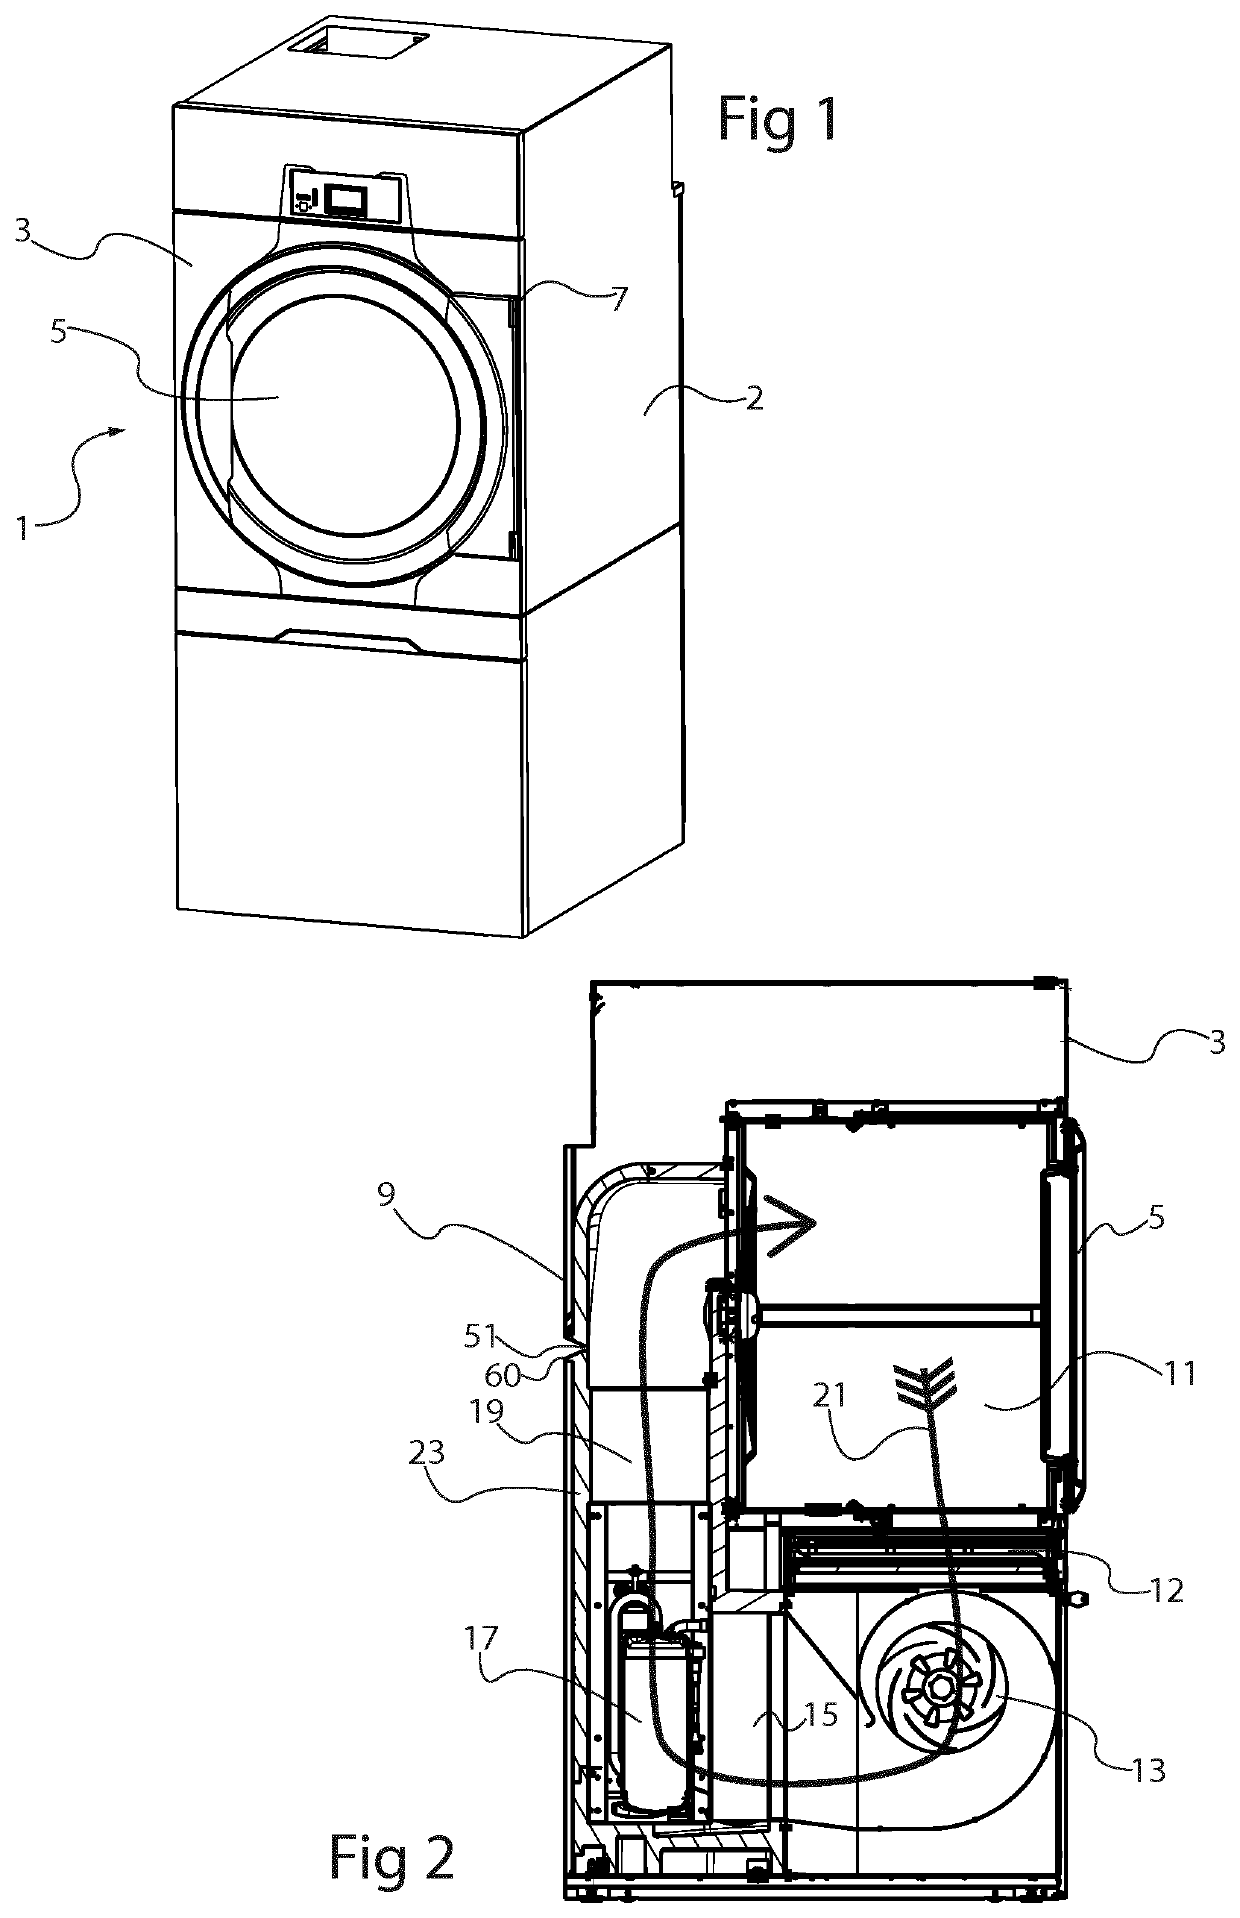 Tumble dryer